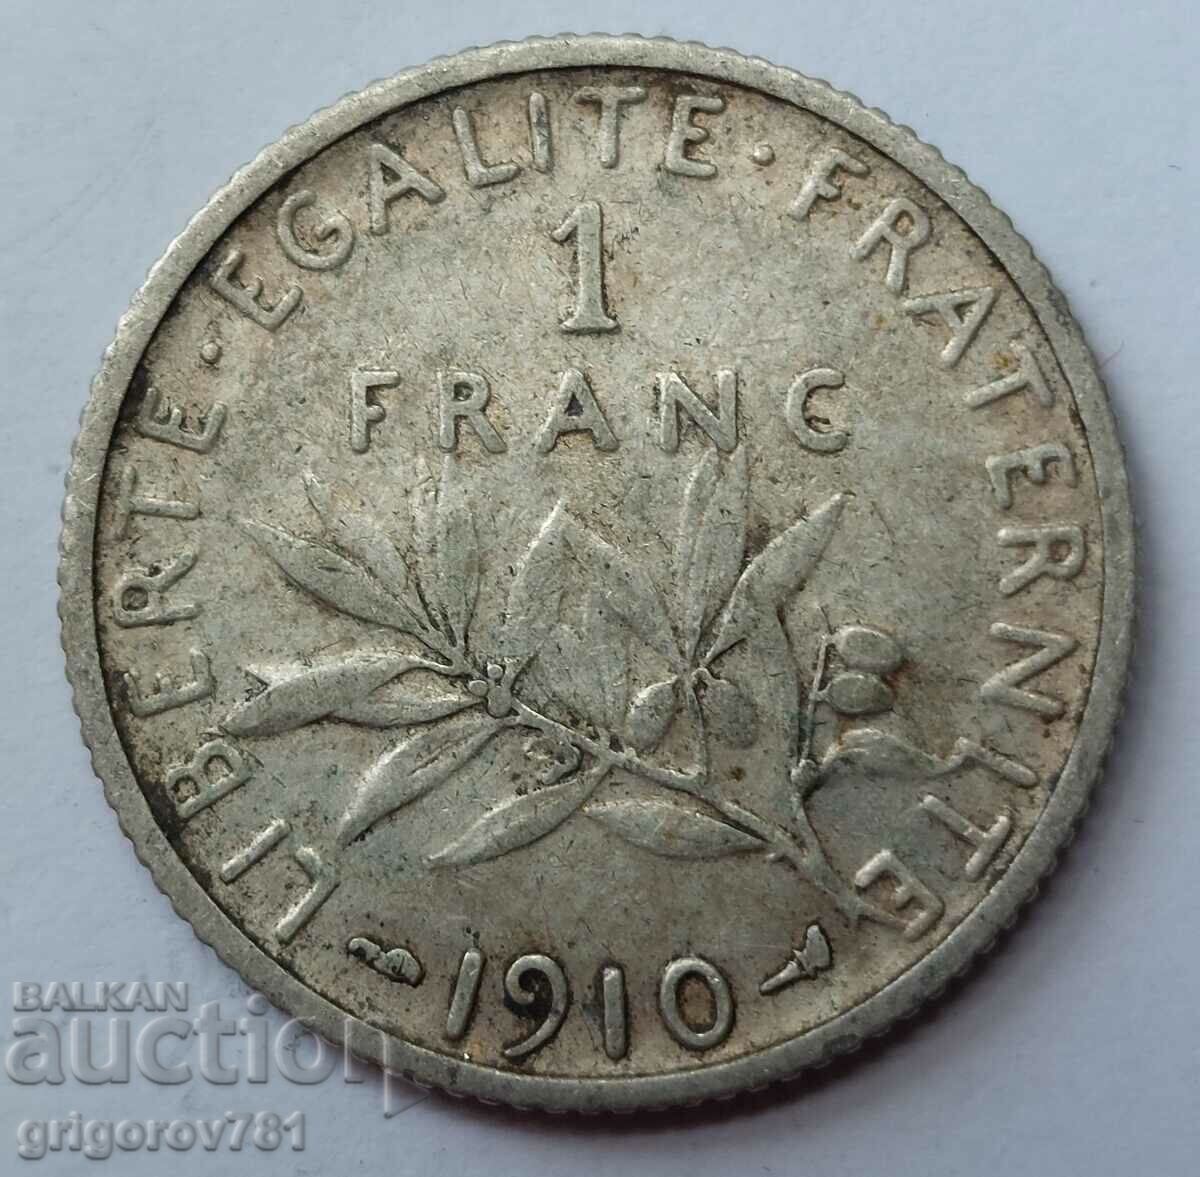 Ασημένιο 1 φράγκου Γαλλία 1910 - ασημένιο νόμισμα №30